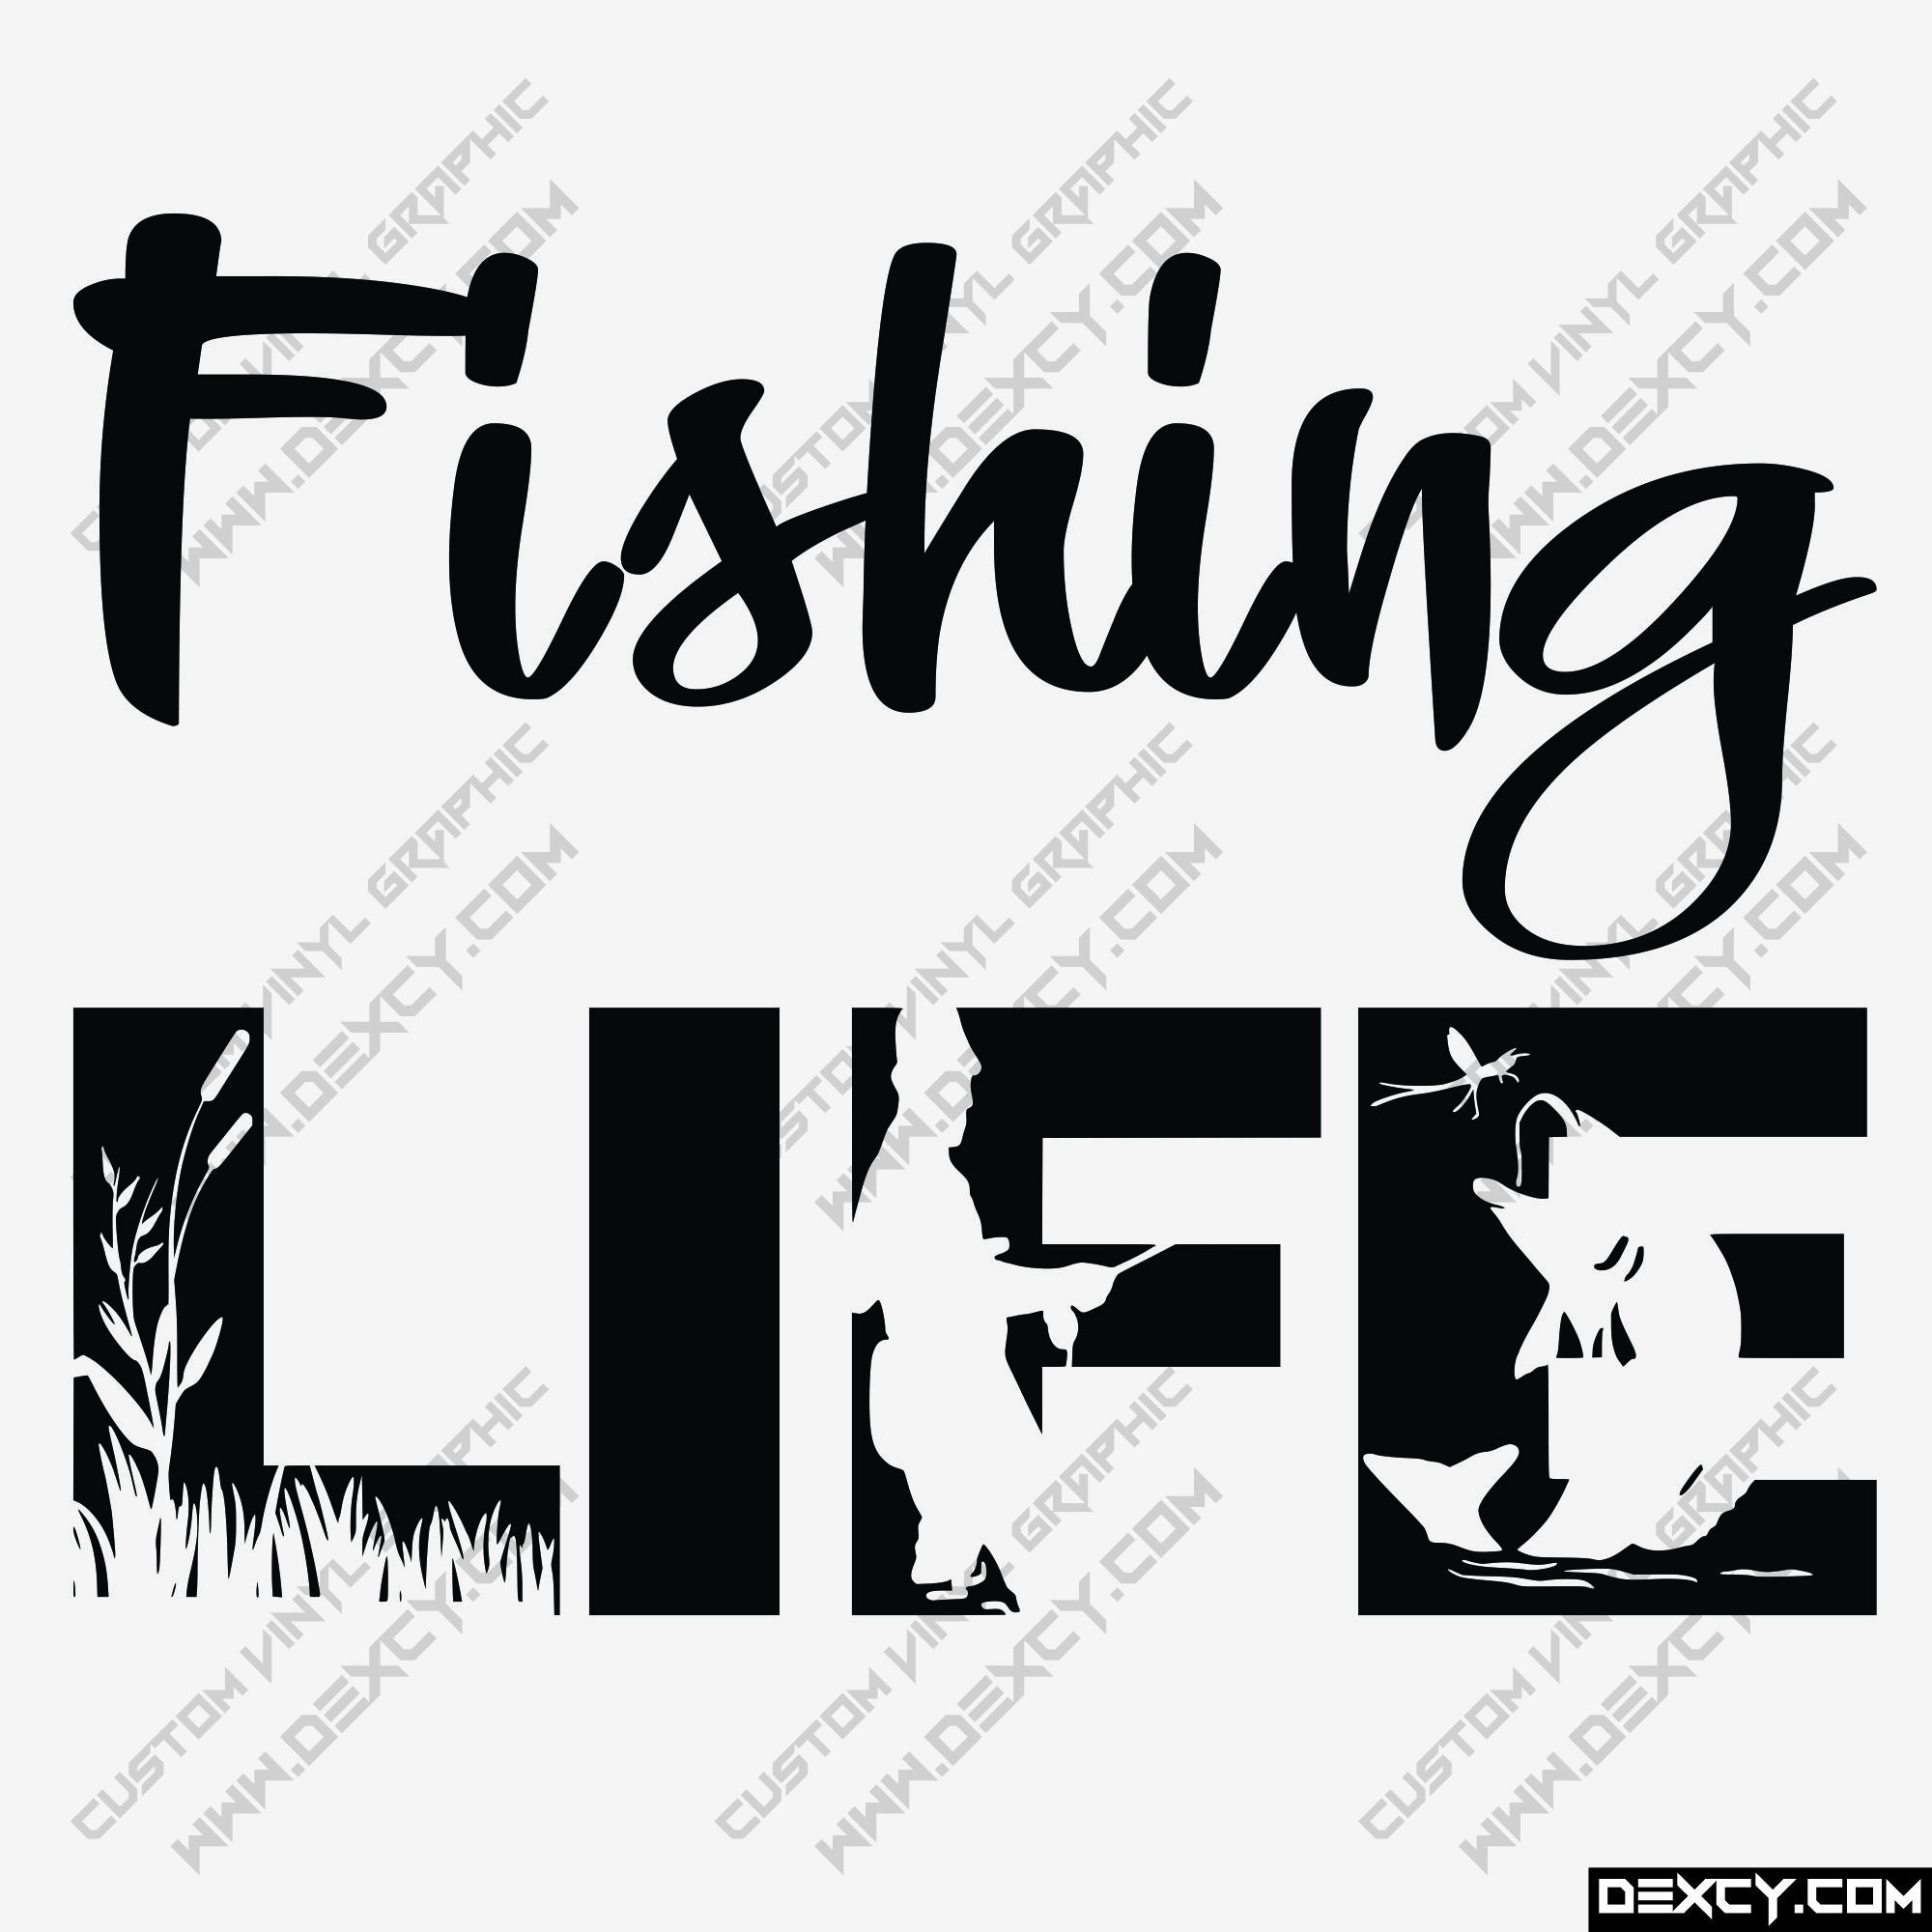 Fishing Life vinyl decal, Fishing Vinyl Decal Sticker Custom